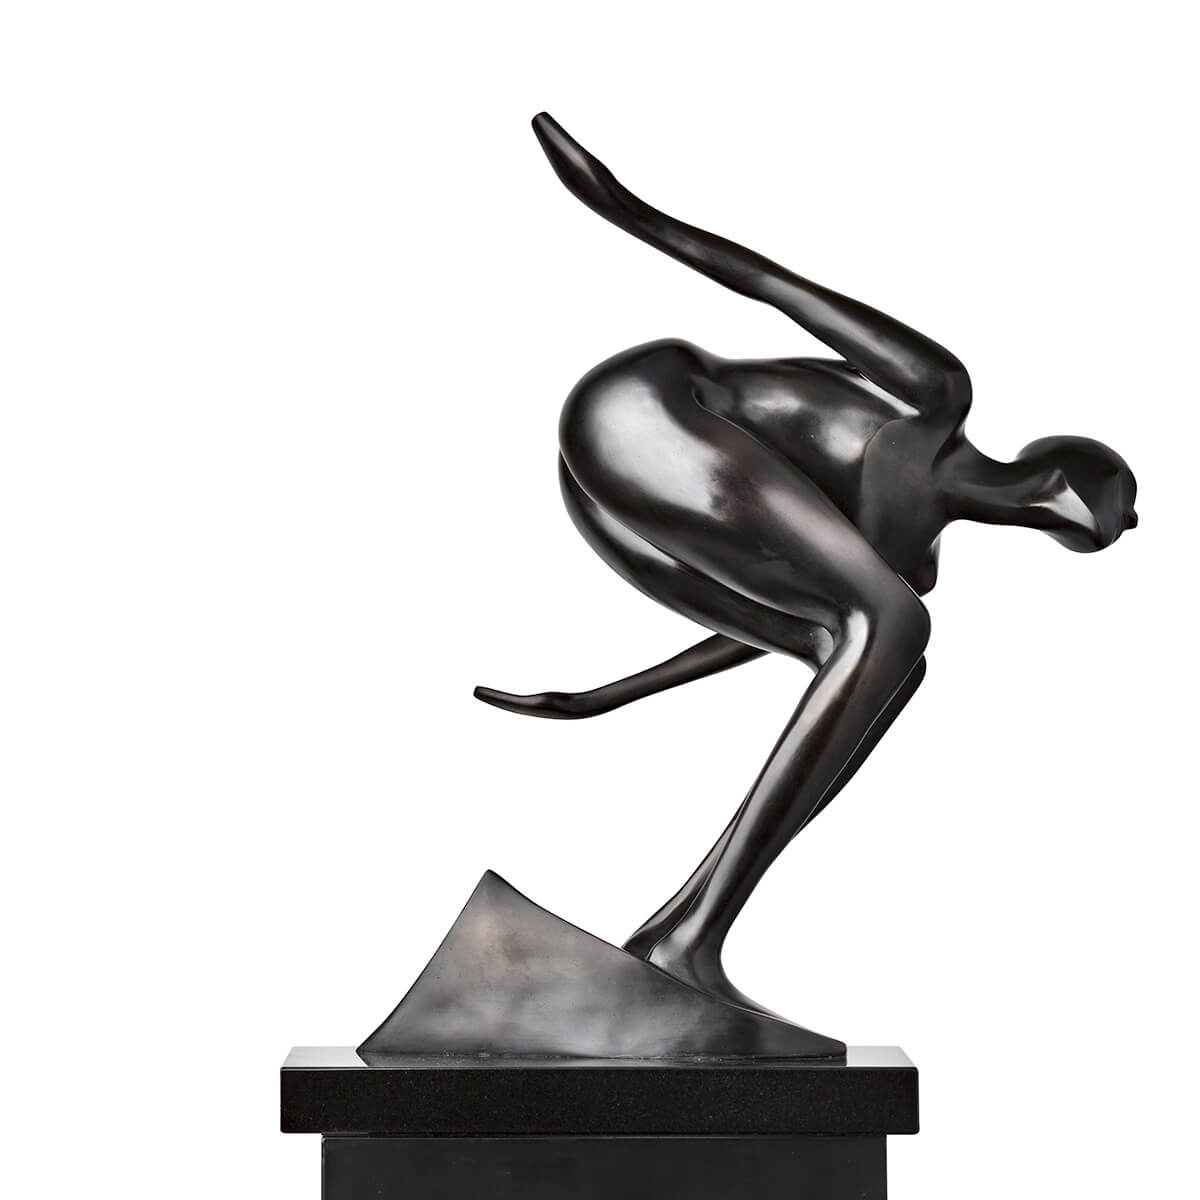 Robert-Helle-Sculpture-Gallery-Flow-2-1200x1200